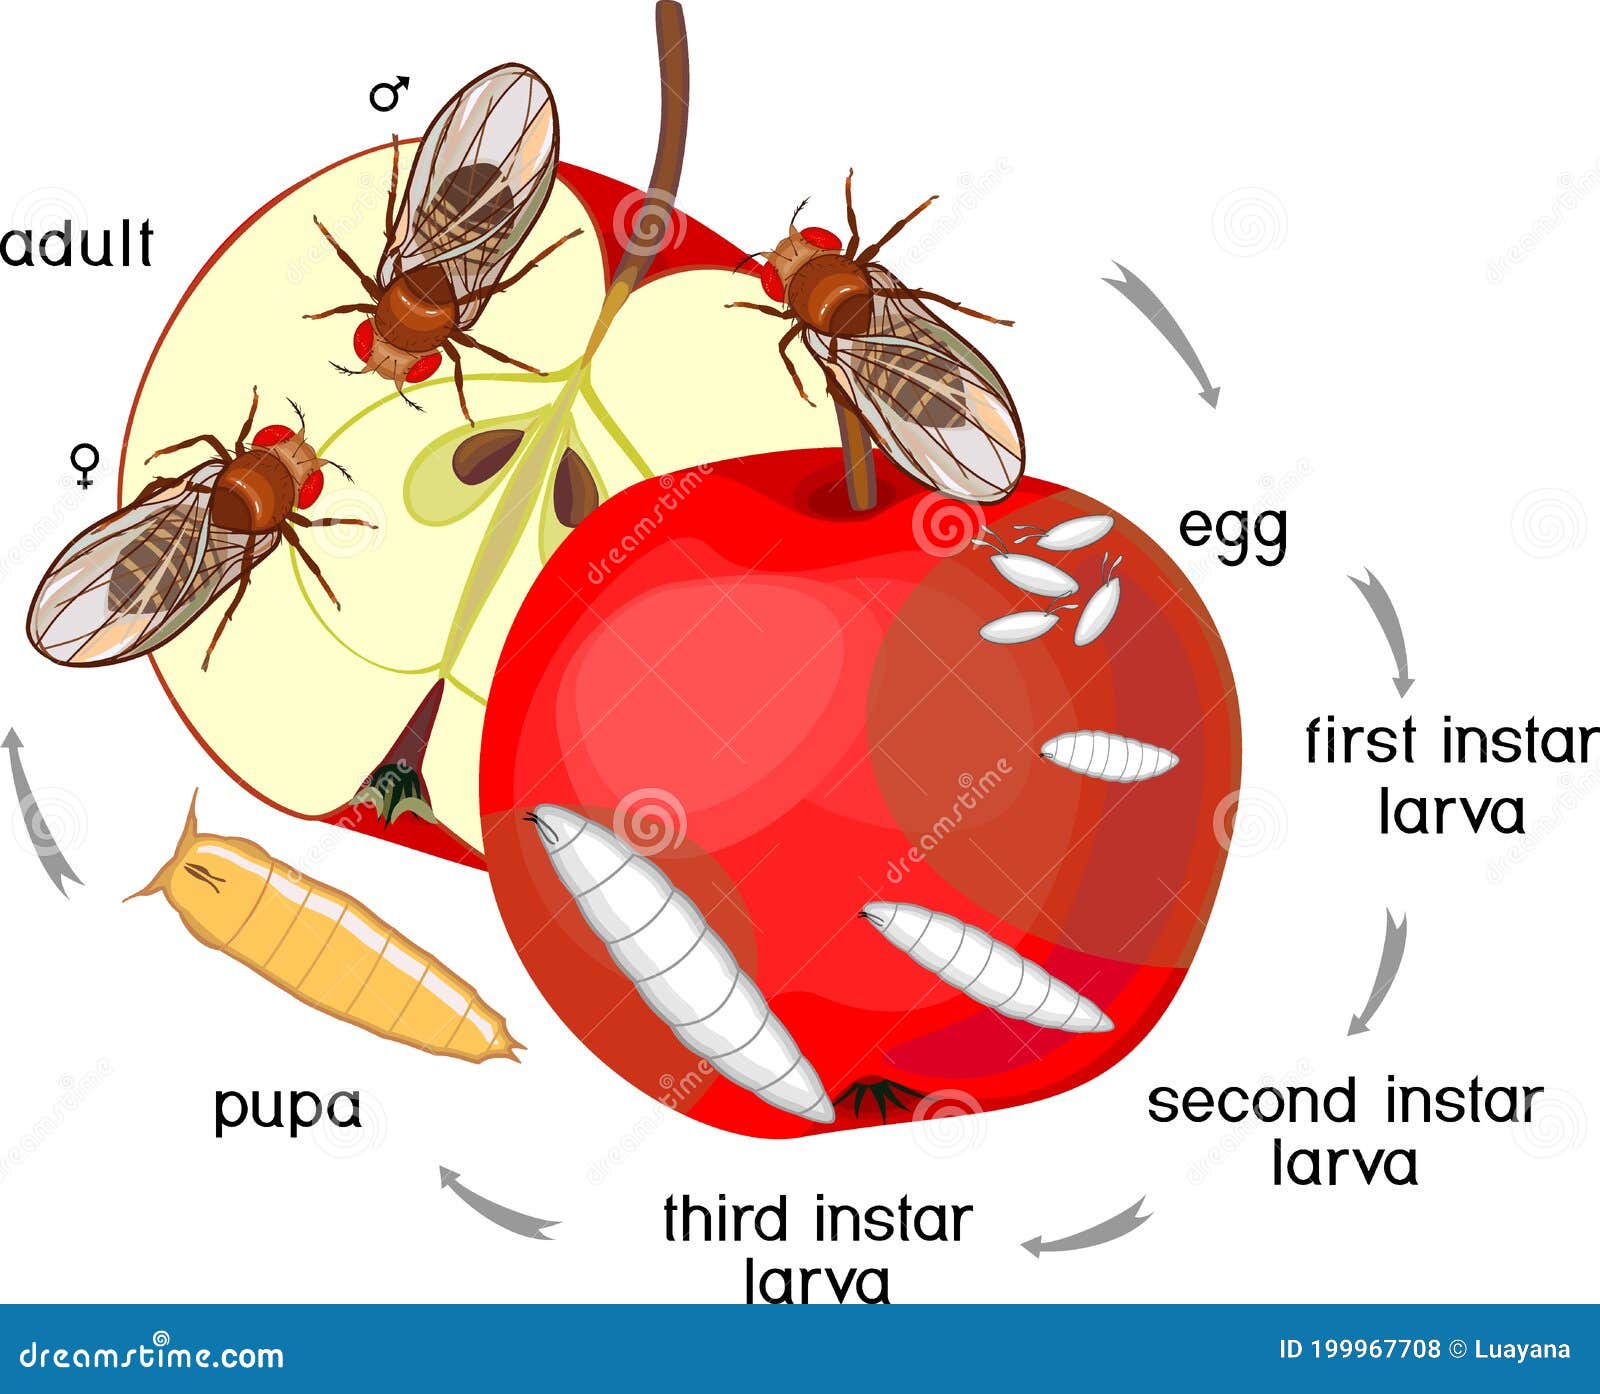 La metamorfosis del domador de moscas